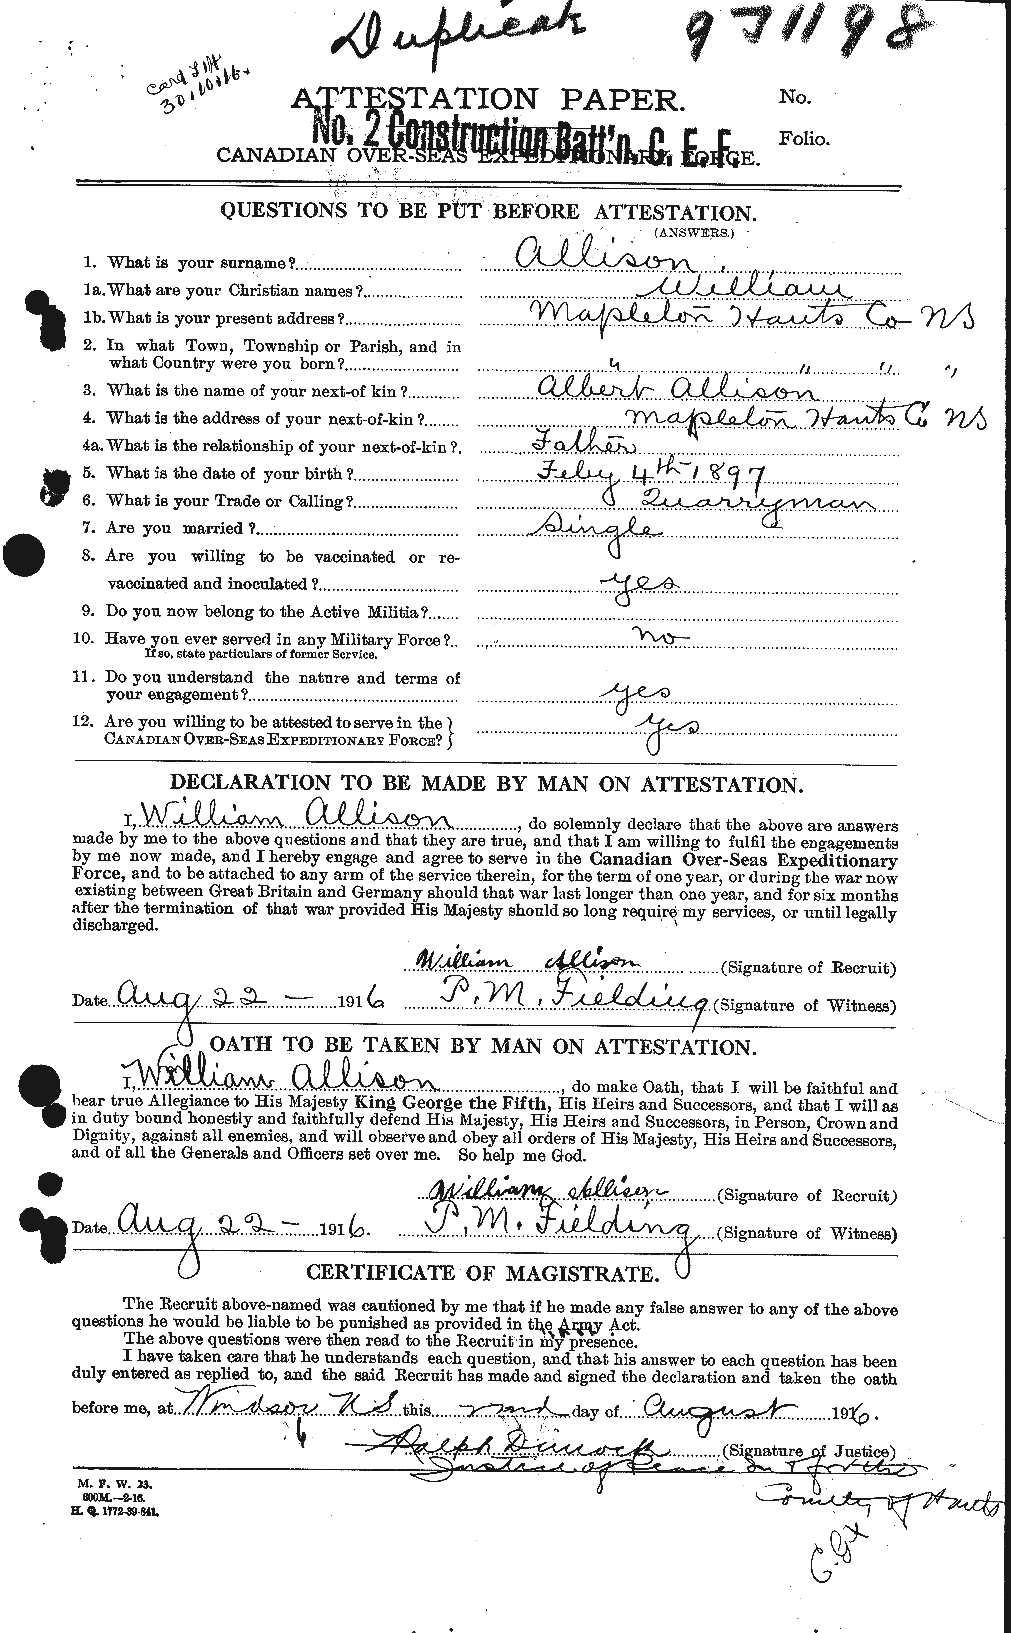 Dossiers du Personnel de la Première Guerre mondiale - CEC 208457a